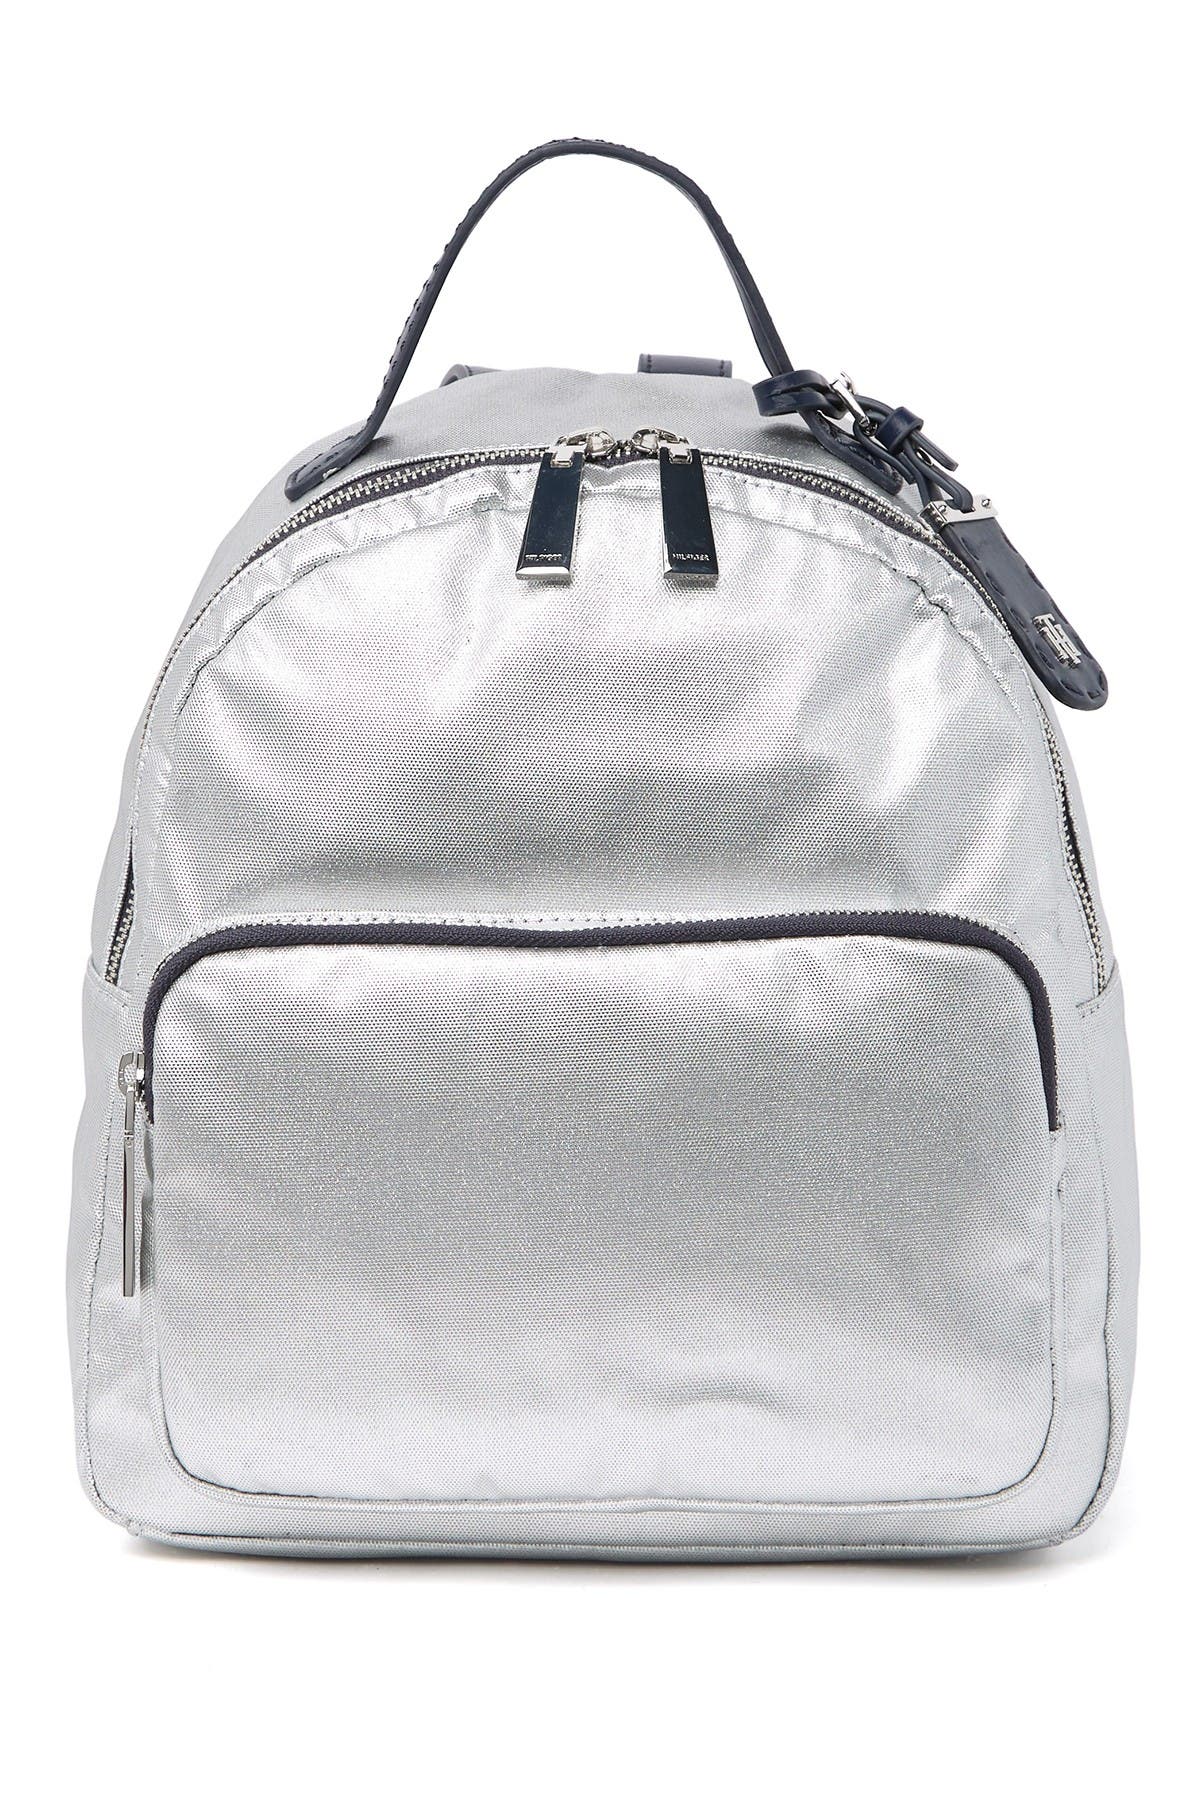 tommy hilfiger silver backpack